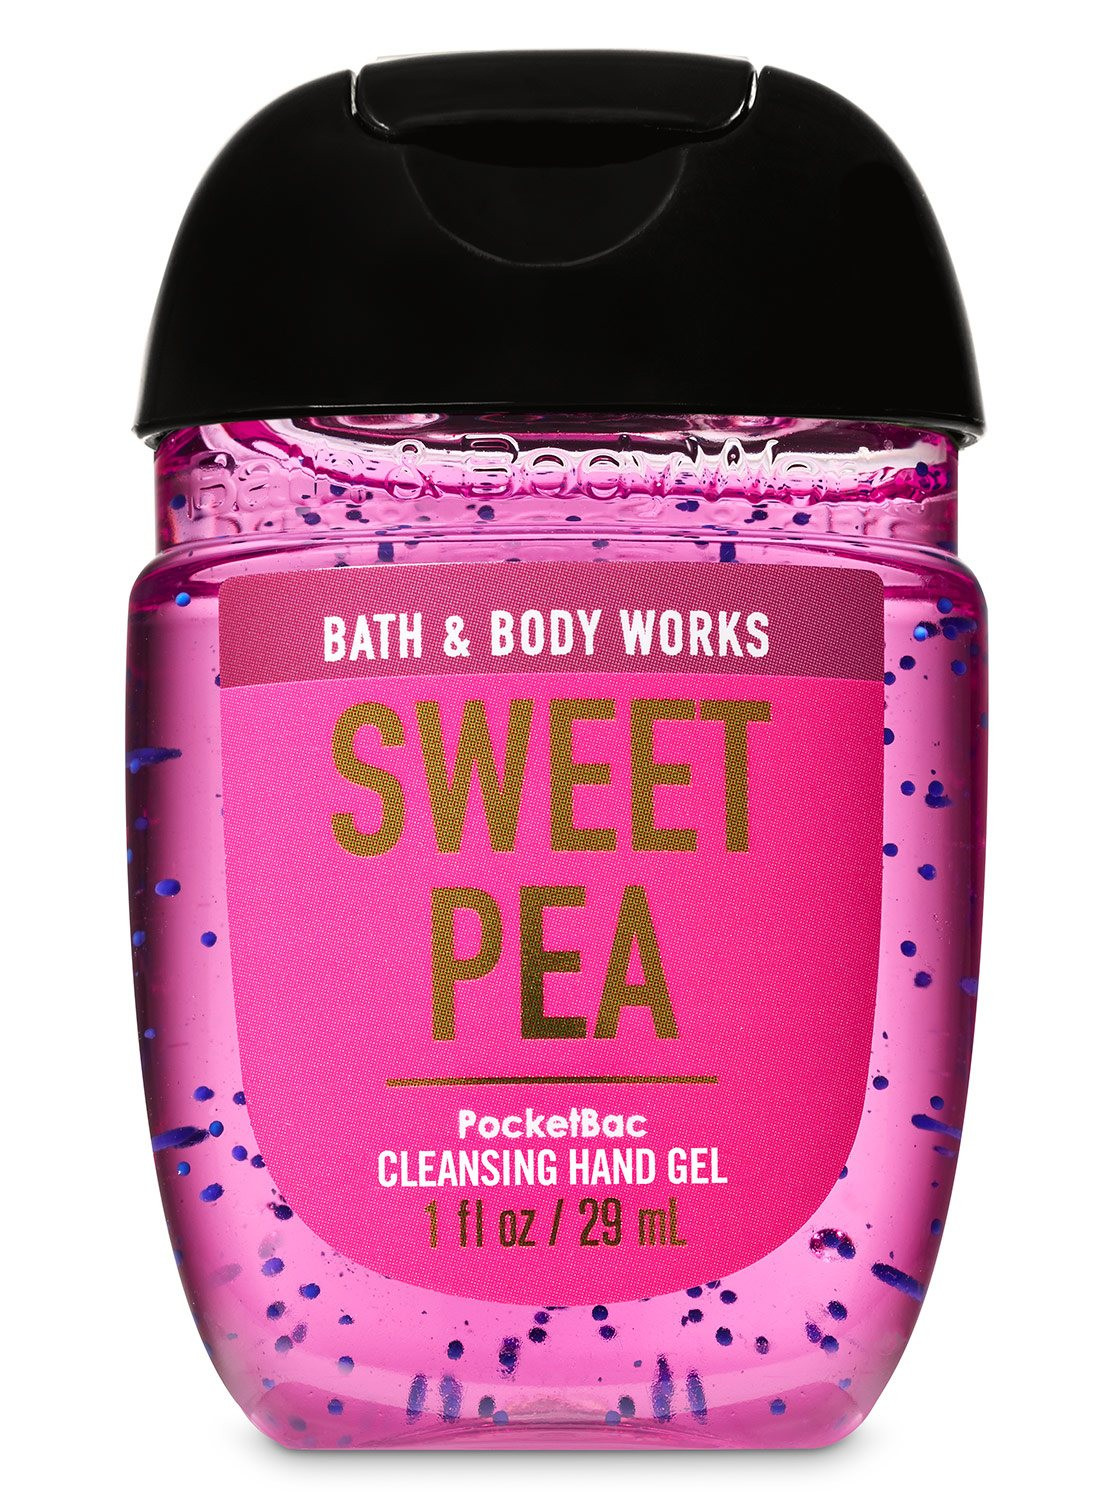 Sweet Pea PocketBac Cleansing Hand Gel | Bath & Body Works Malaysia ...